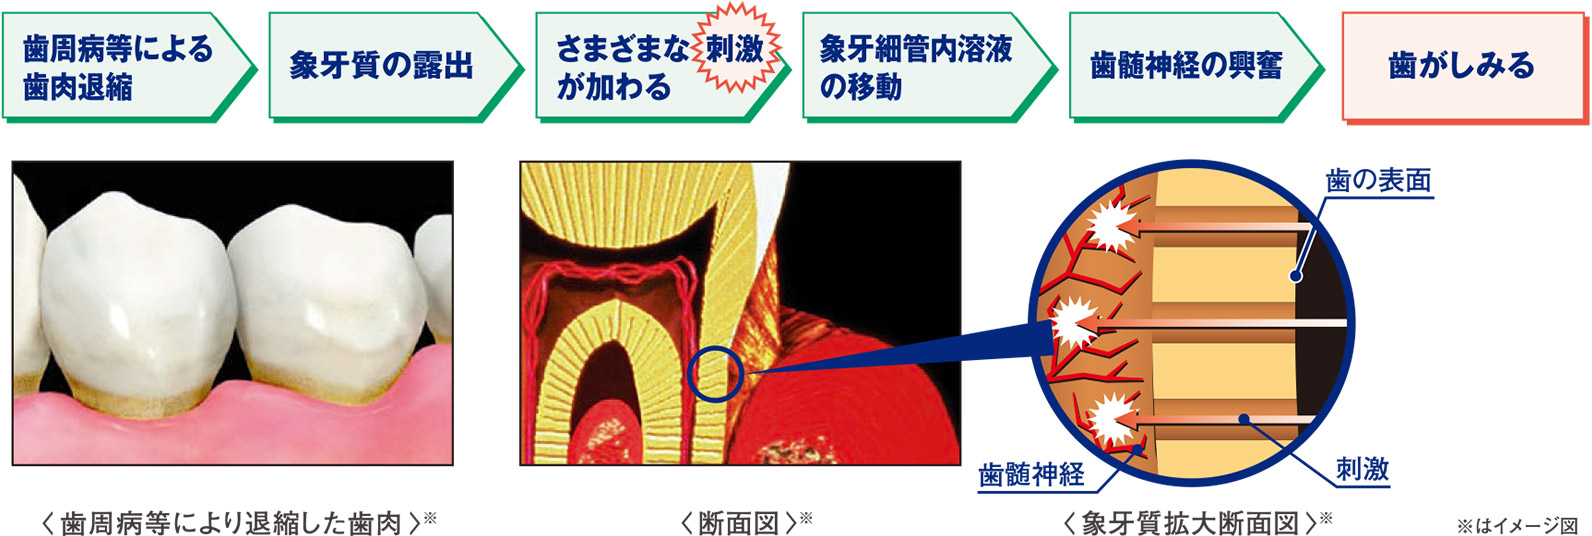 歯周病等による歯肉退縮 象牙質の露出 さまざまな刺激が加わる 象牙細管内溶液の移動 歯髄神経の興奮 歯がしみる